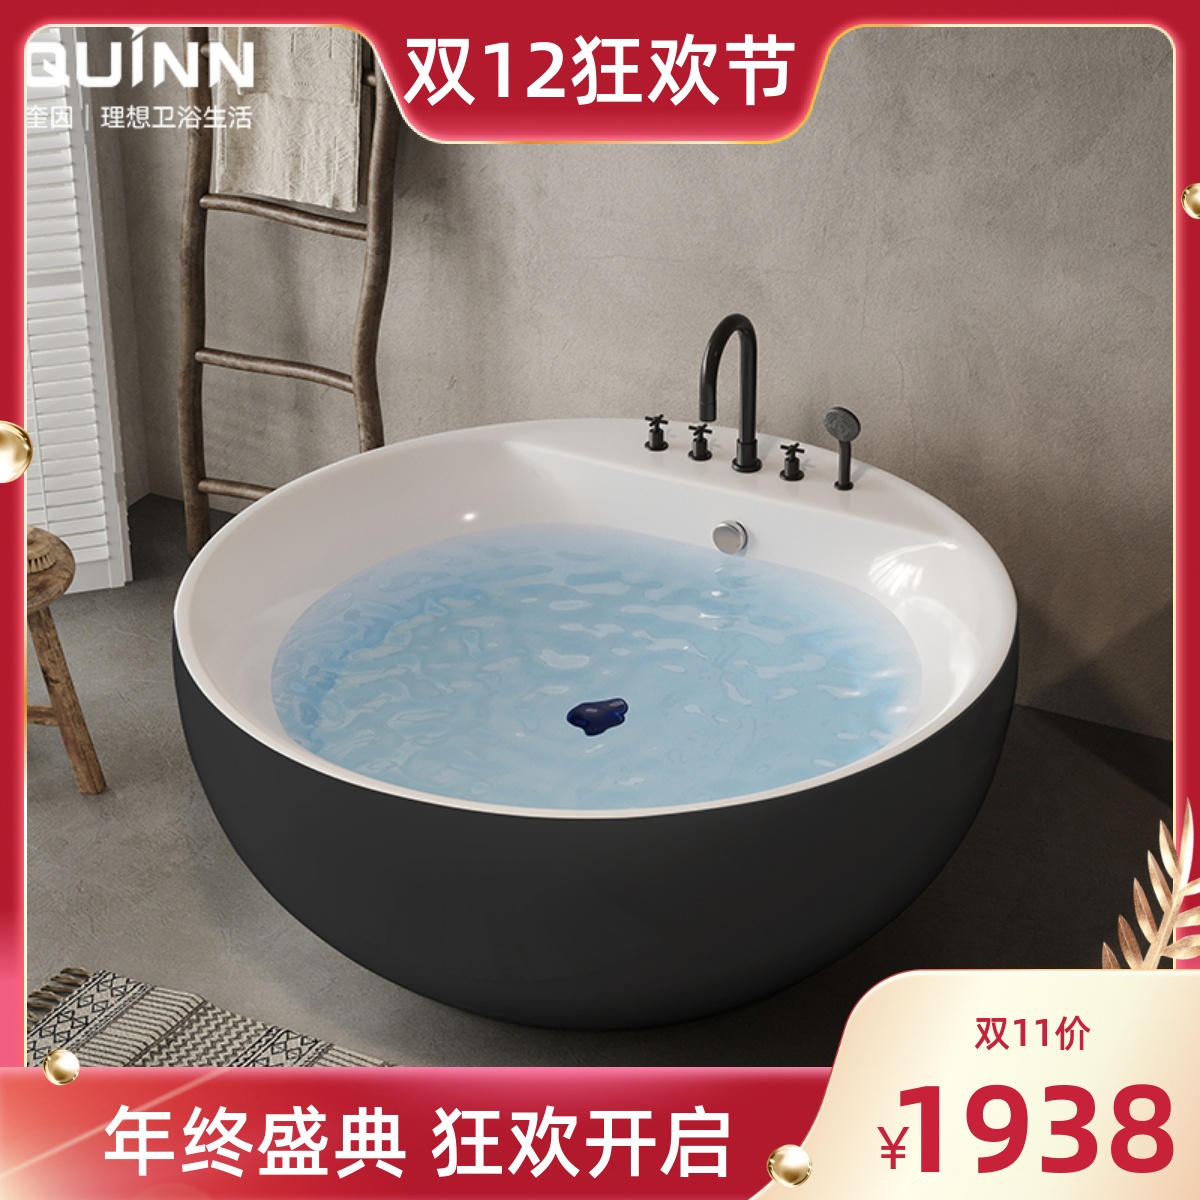 在香港，享受酒店房間內的奢華浴缸 | Dayuse.com.hk